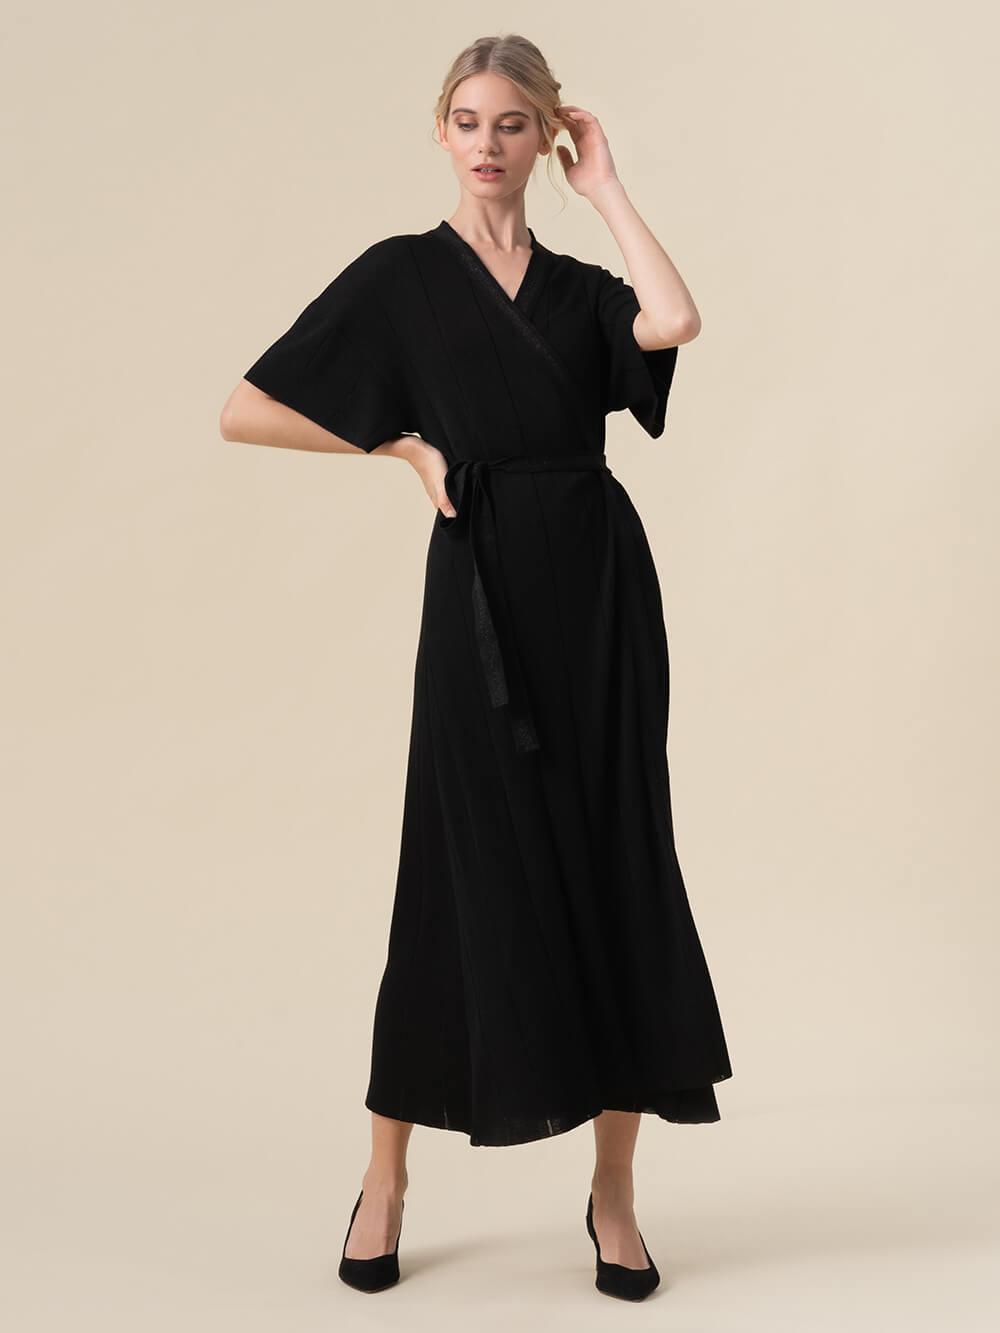 Купить Платье Кимоно В Интернет Магазине